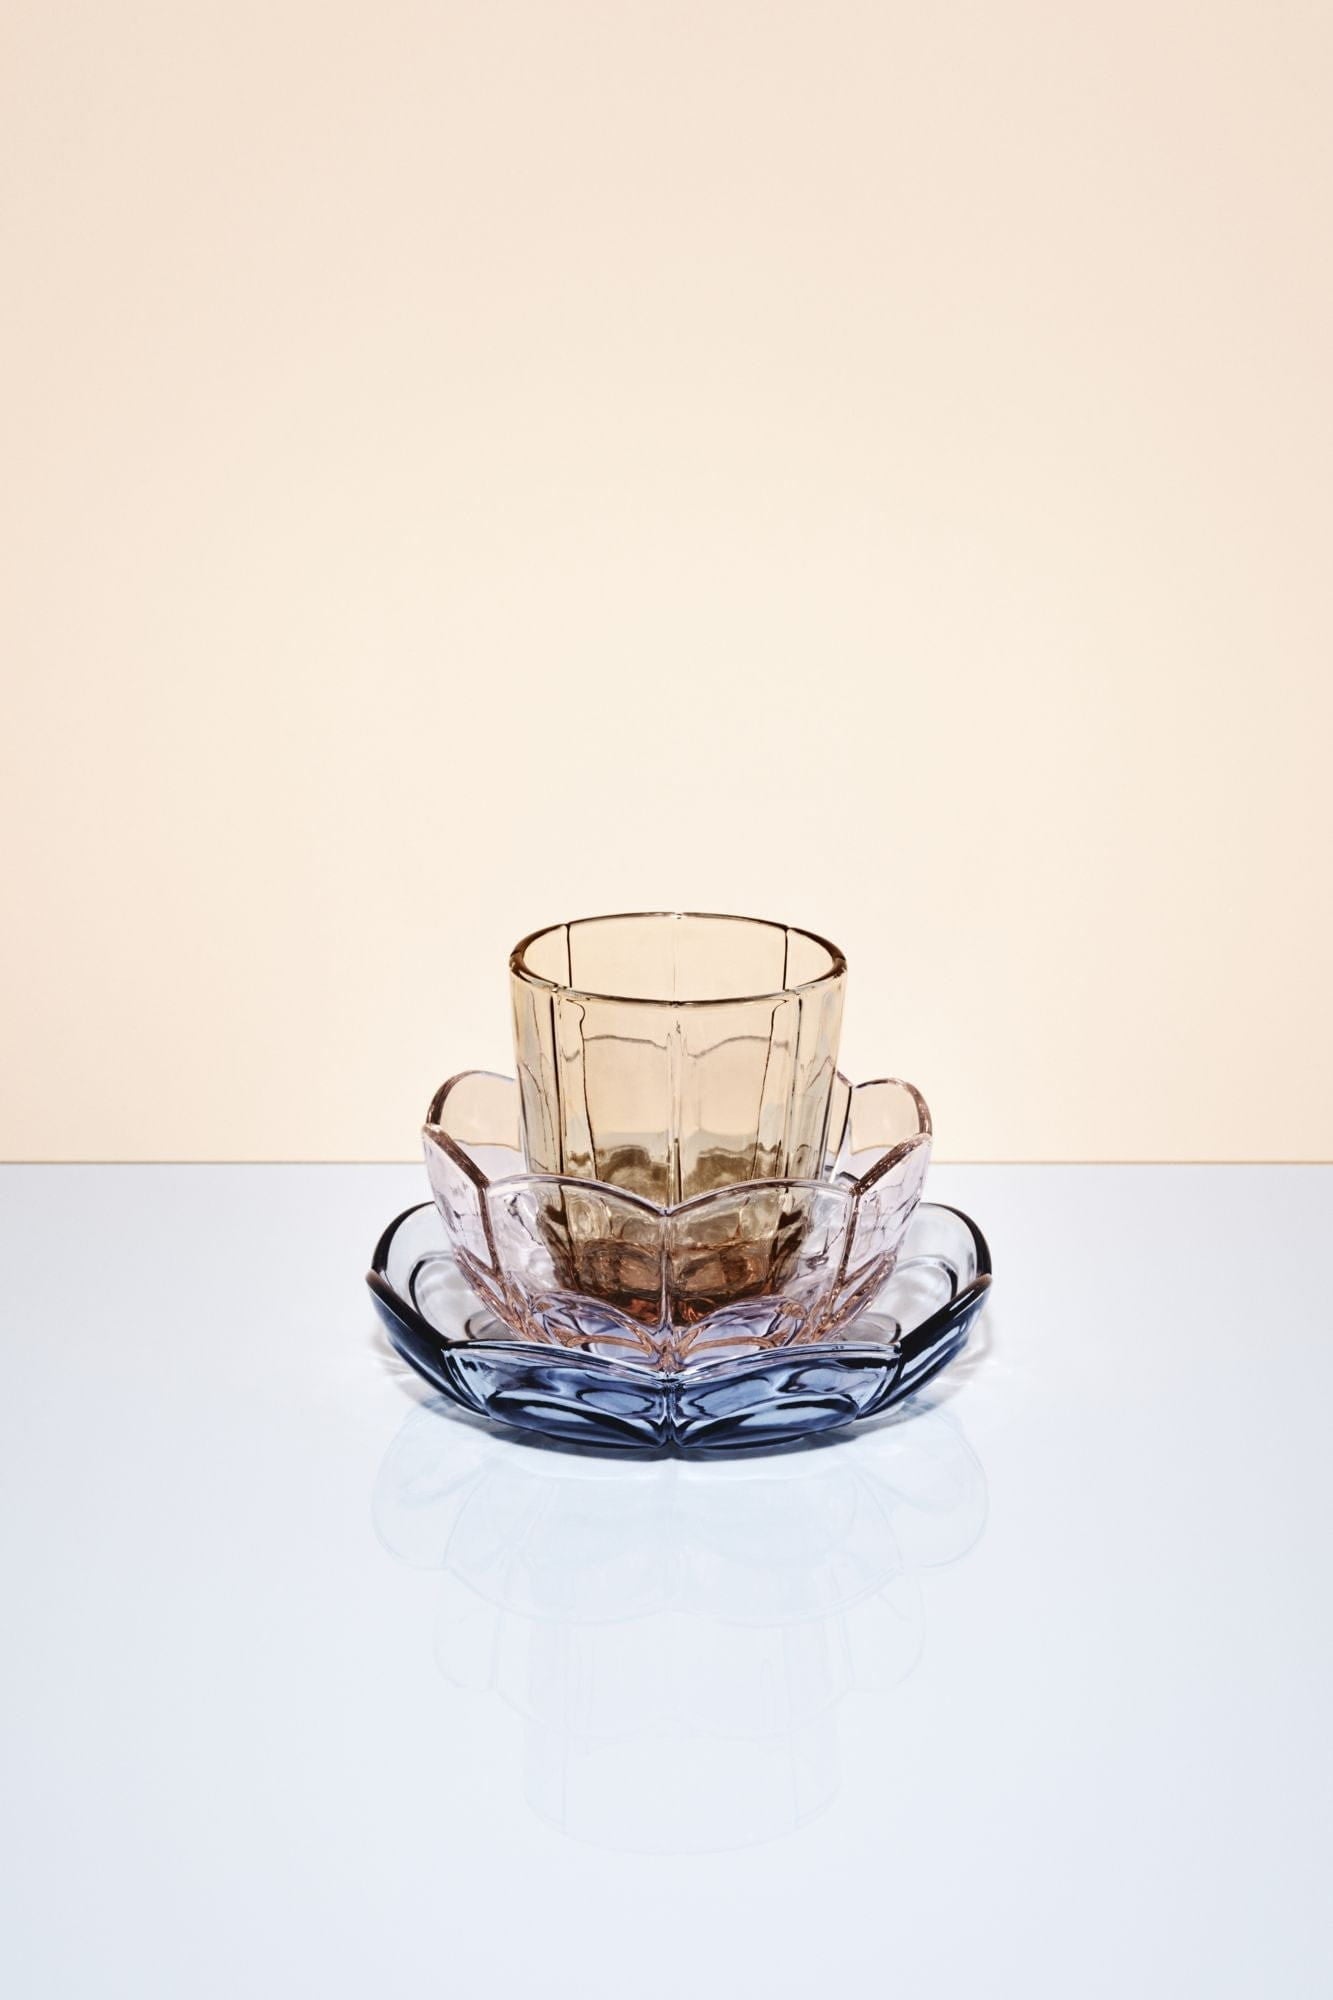 Holmegaard Ensemble de verre à eau Lily de 2 320 ml, marron